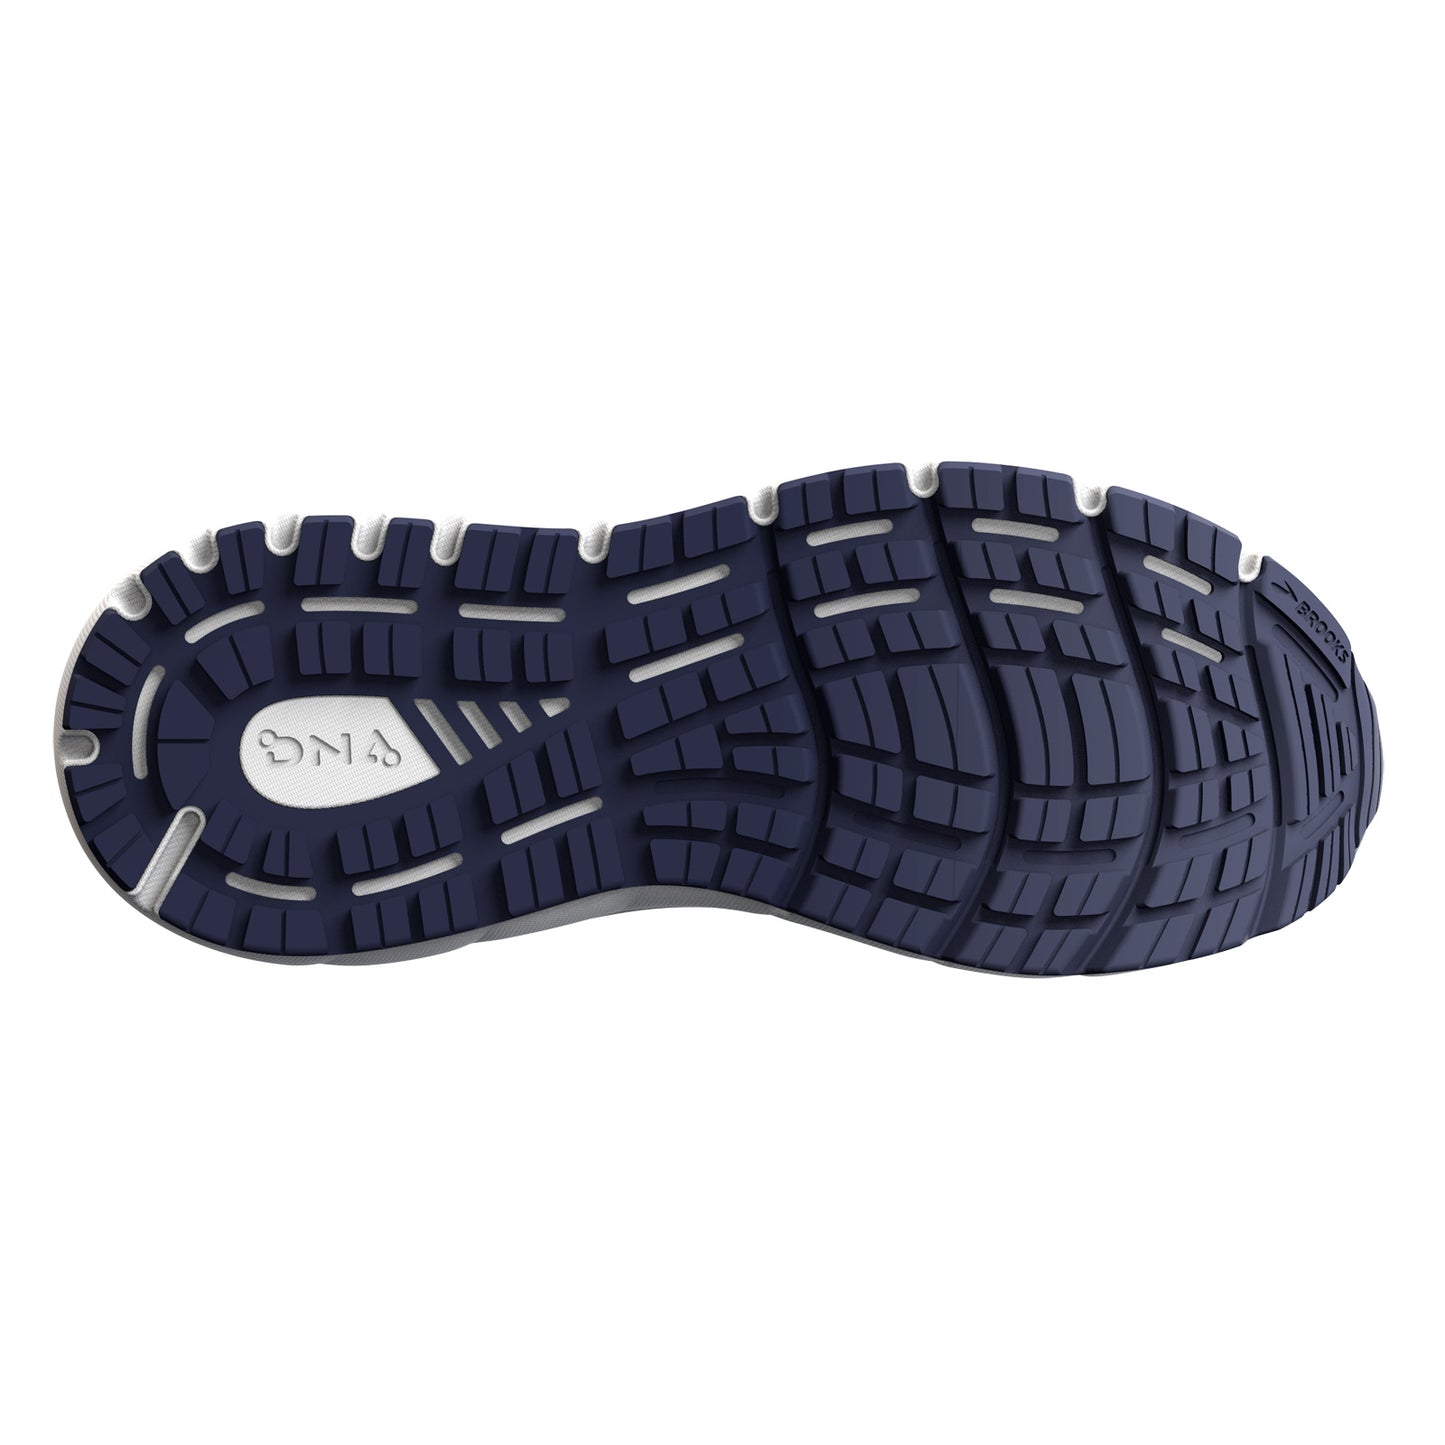 Peltz Shoes  Women's Brooks Addiction GTS 15 Running Shoe Oyster/Rose 120352 1B 054